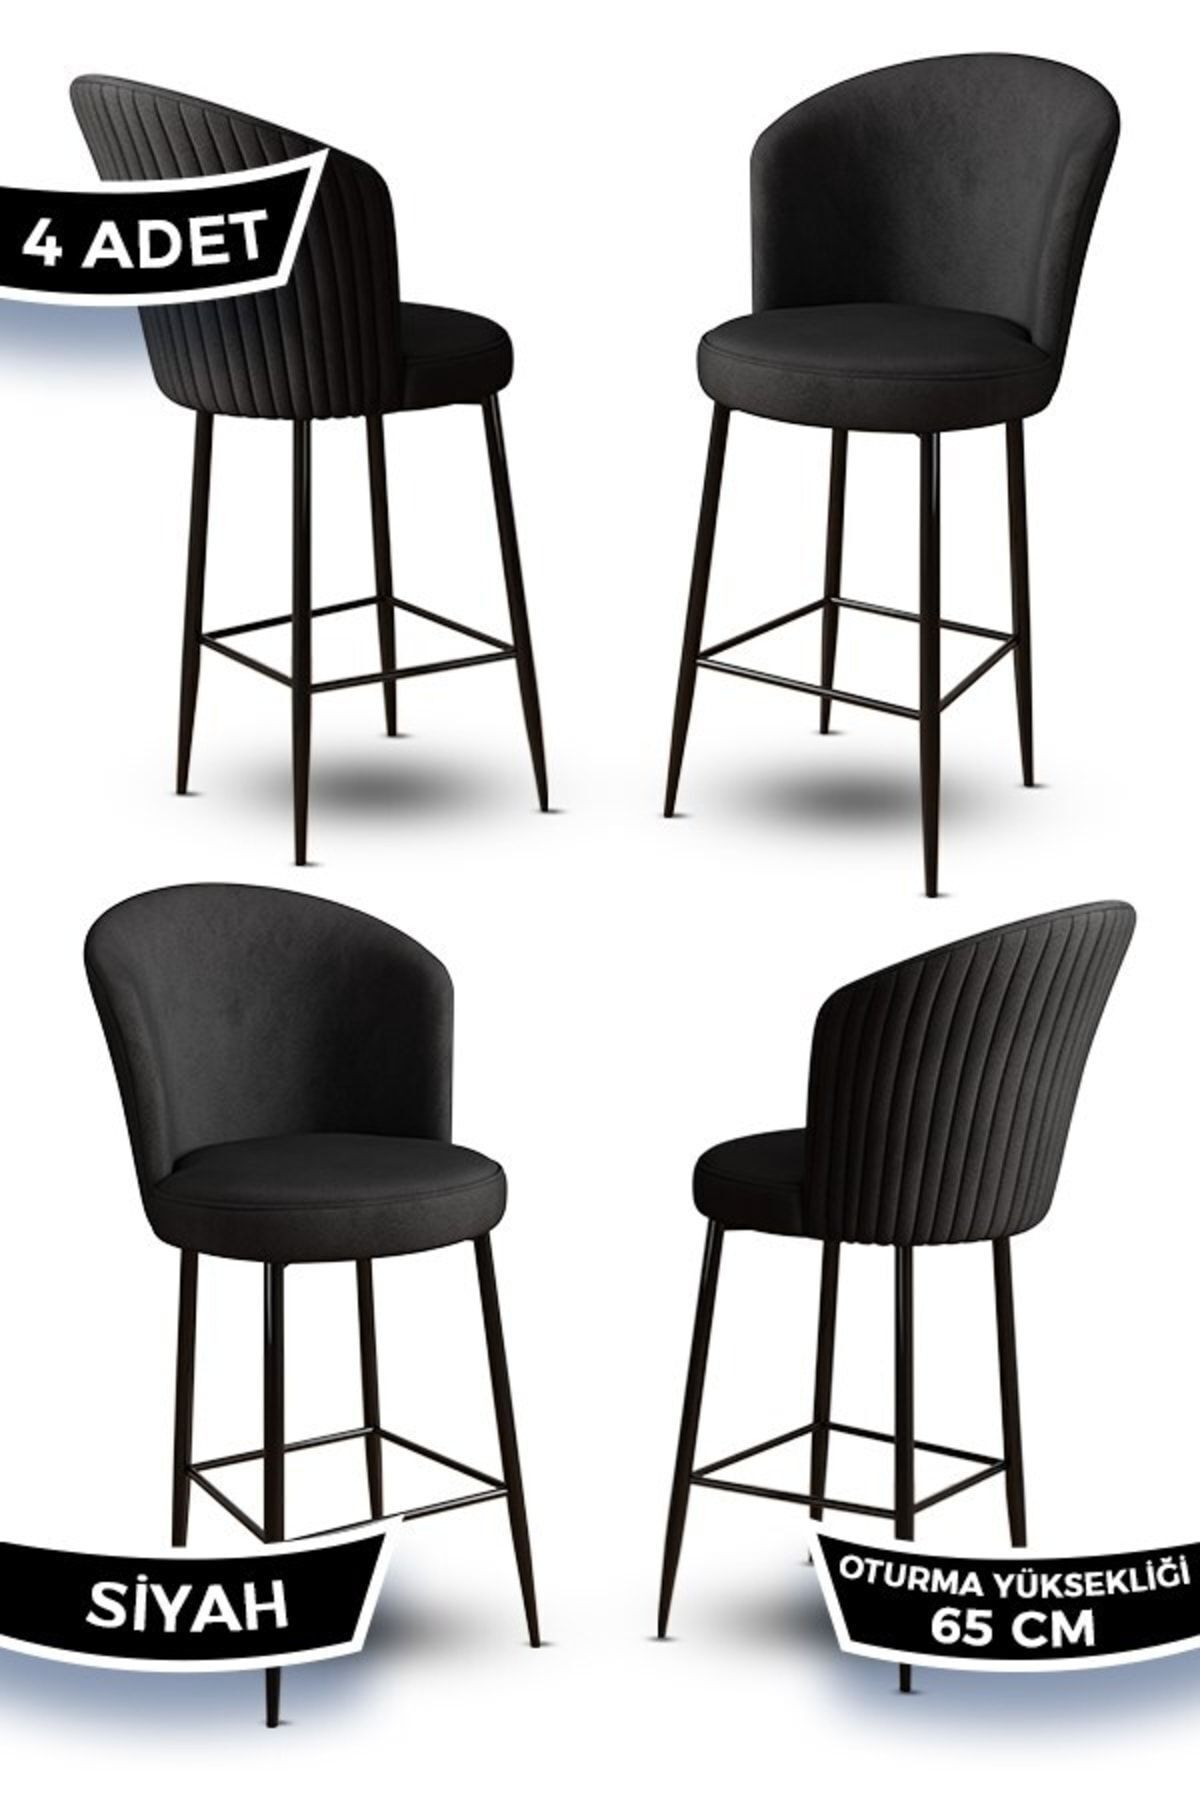 Canisa Alte Serisi 4 Siyah Sandalye 65 Cm Ada Mutfak Bar Sandalyesi Babyface Kumaş Siyah Metal Ayaklı